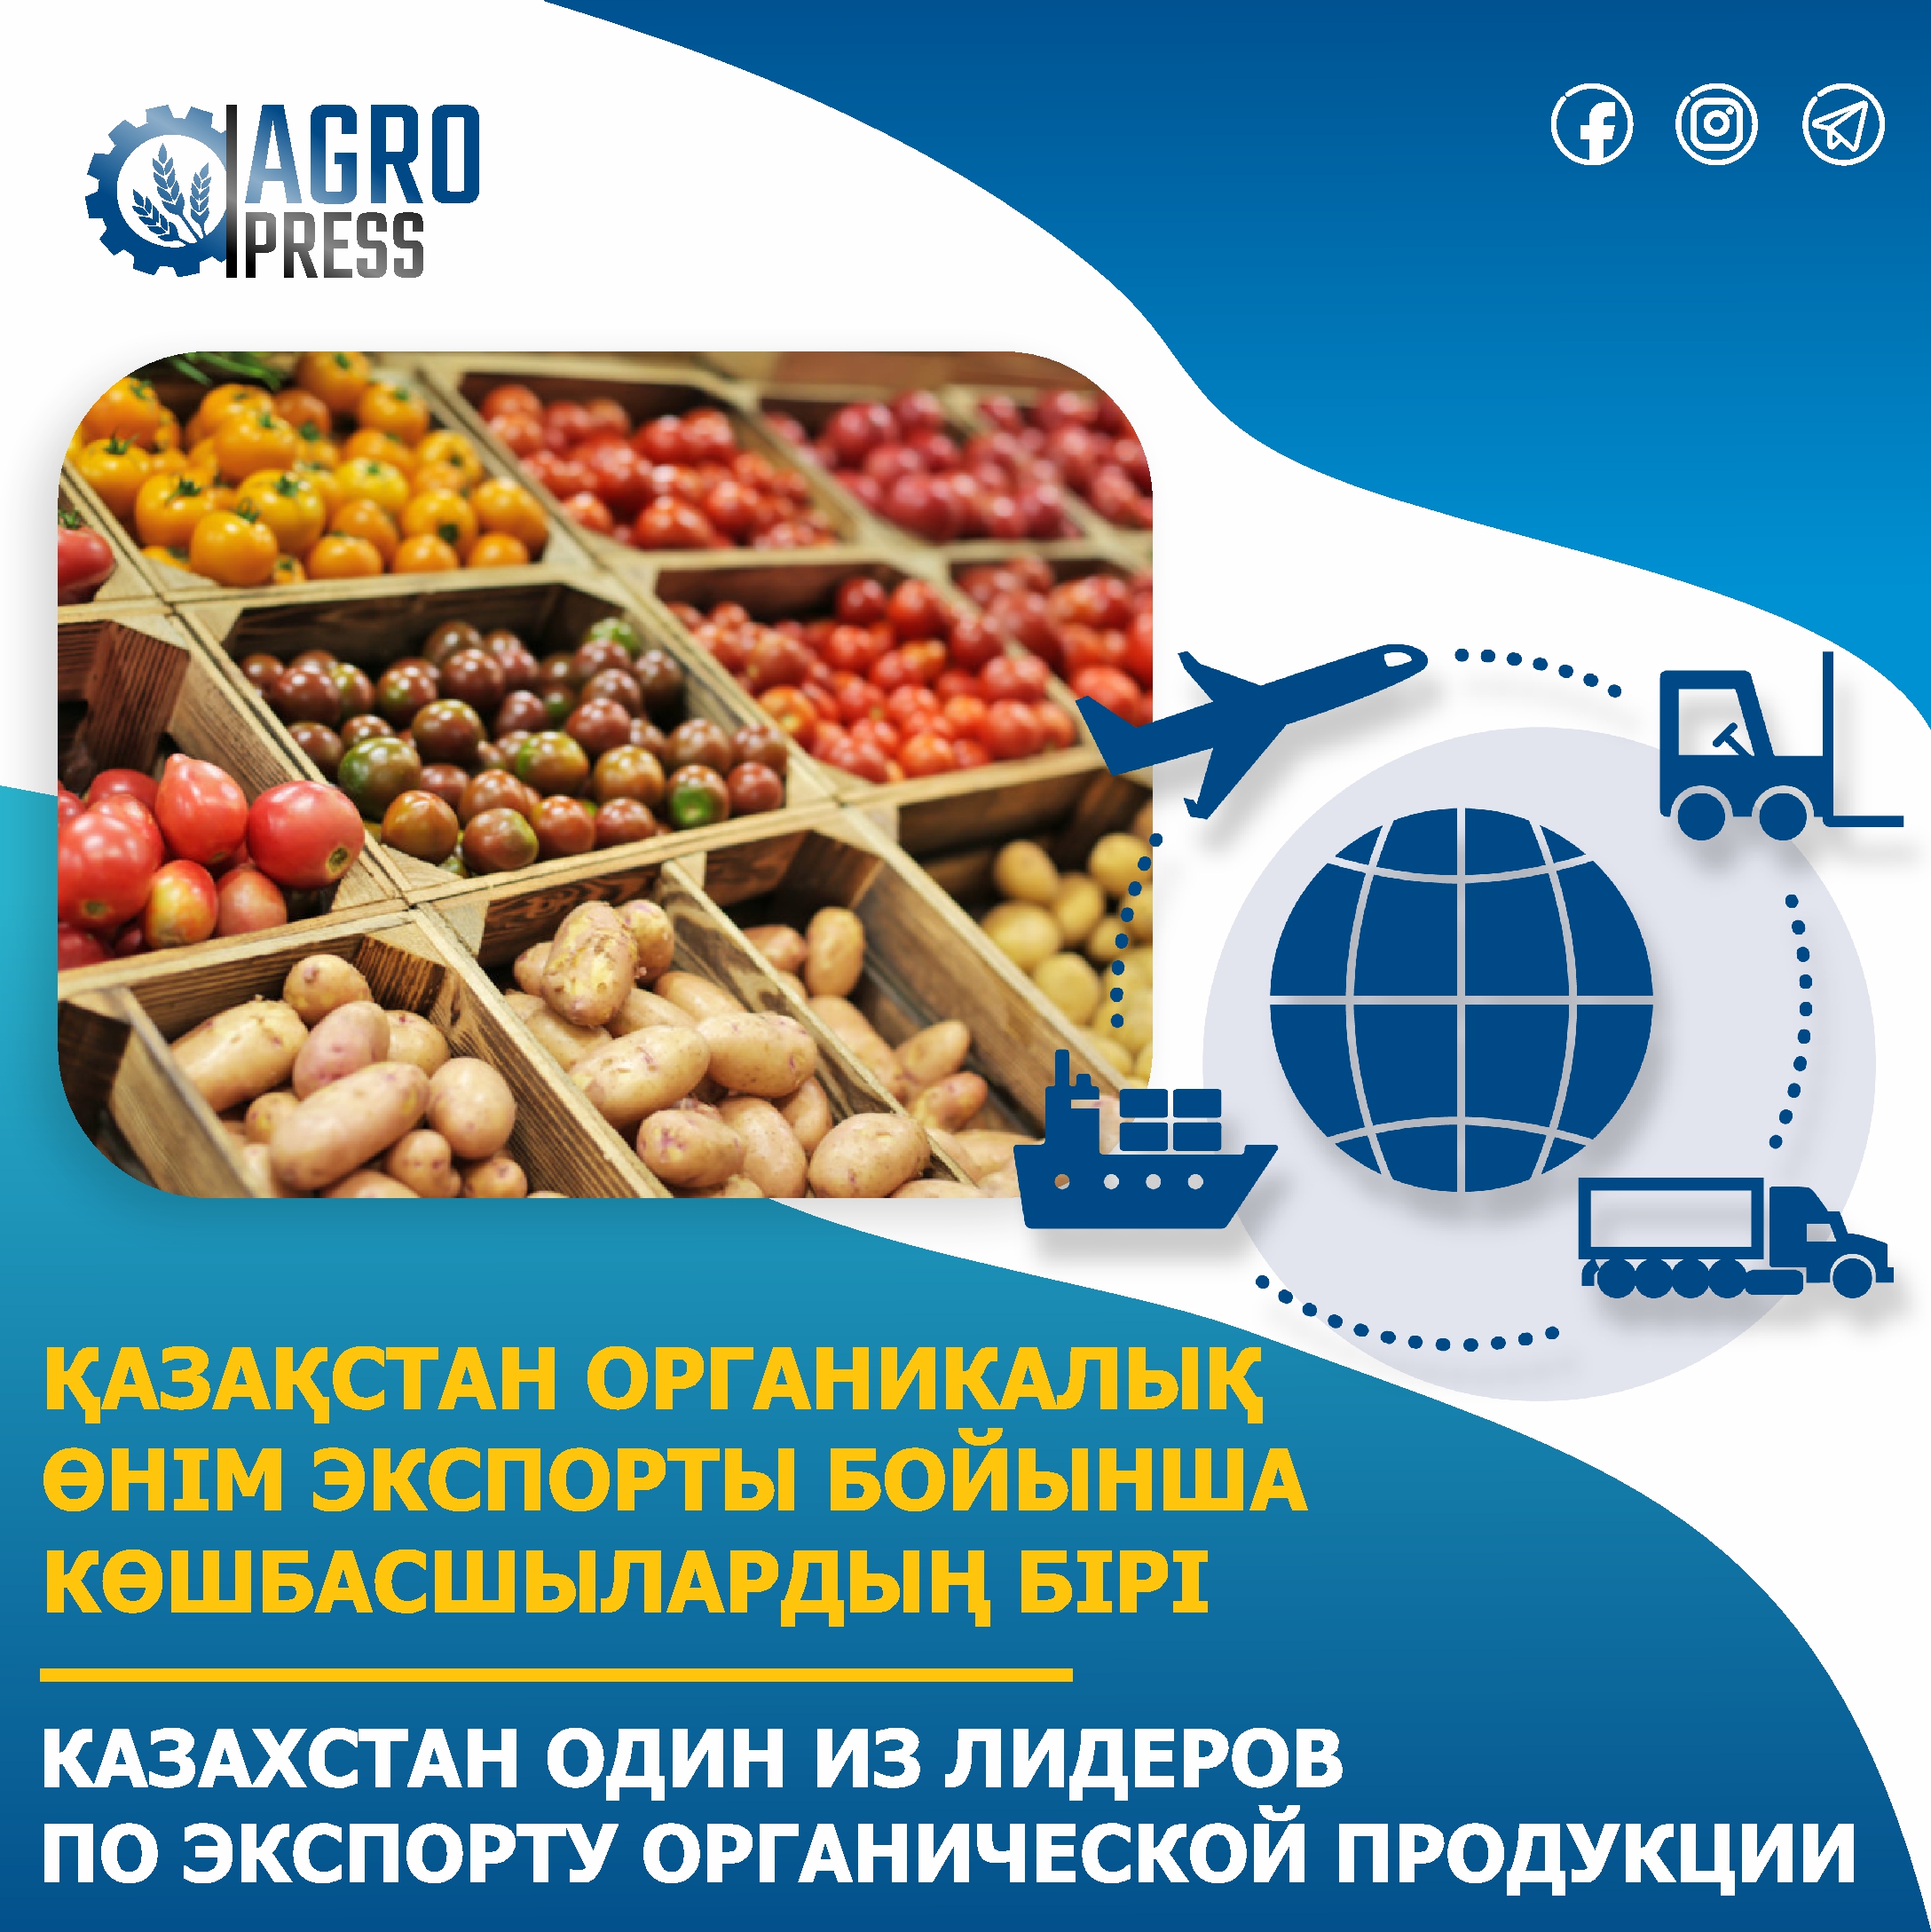 Казахстан один из лидеров по экспорту органической продукции